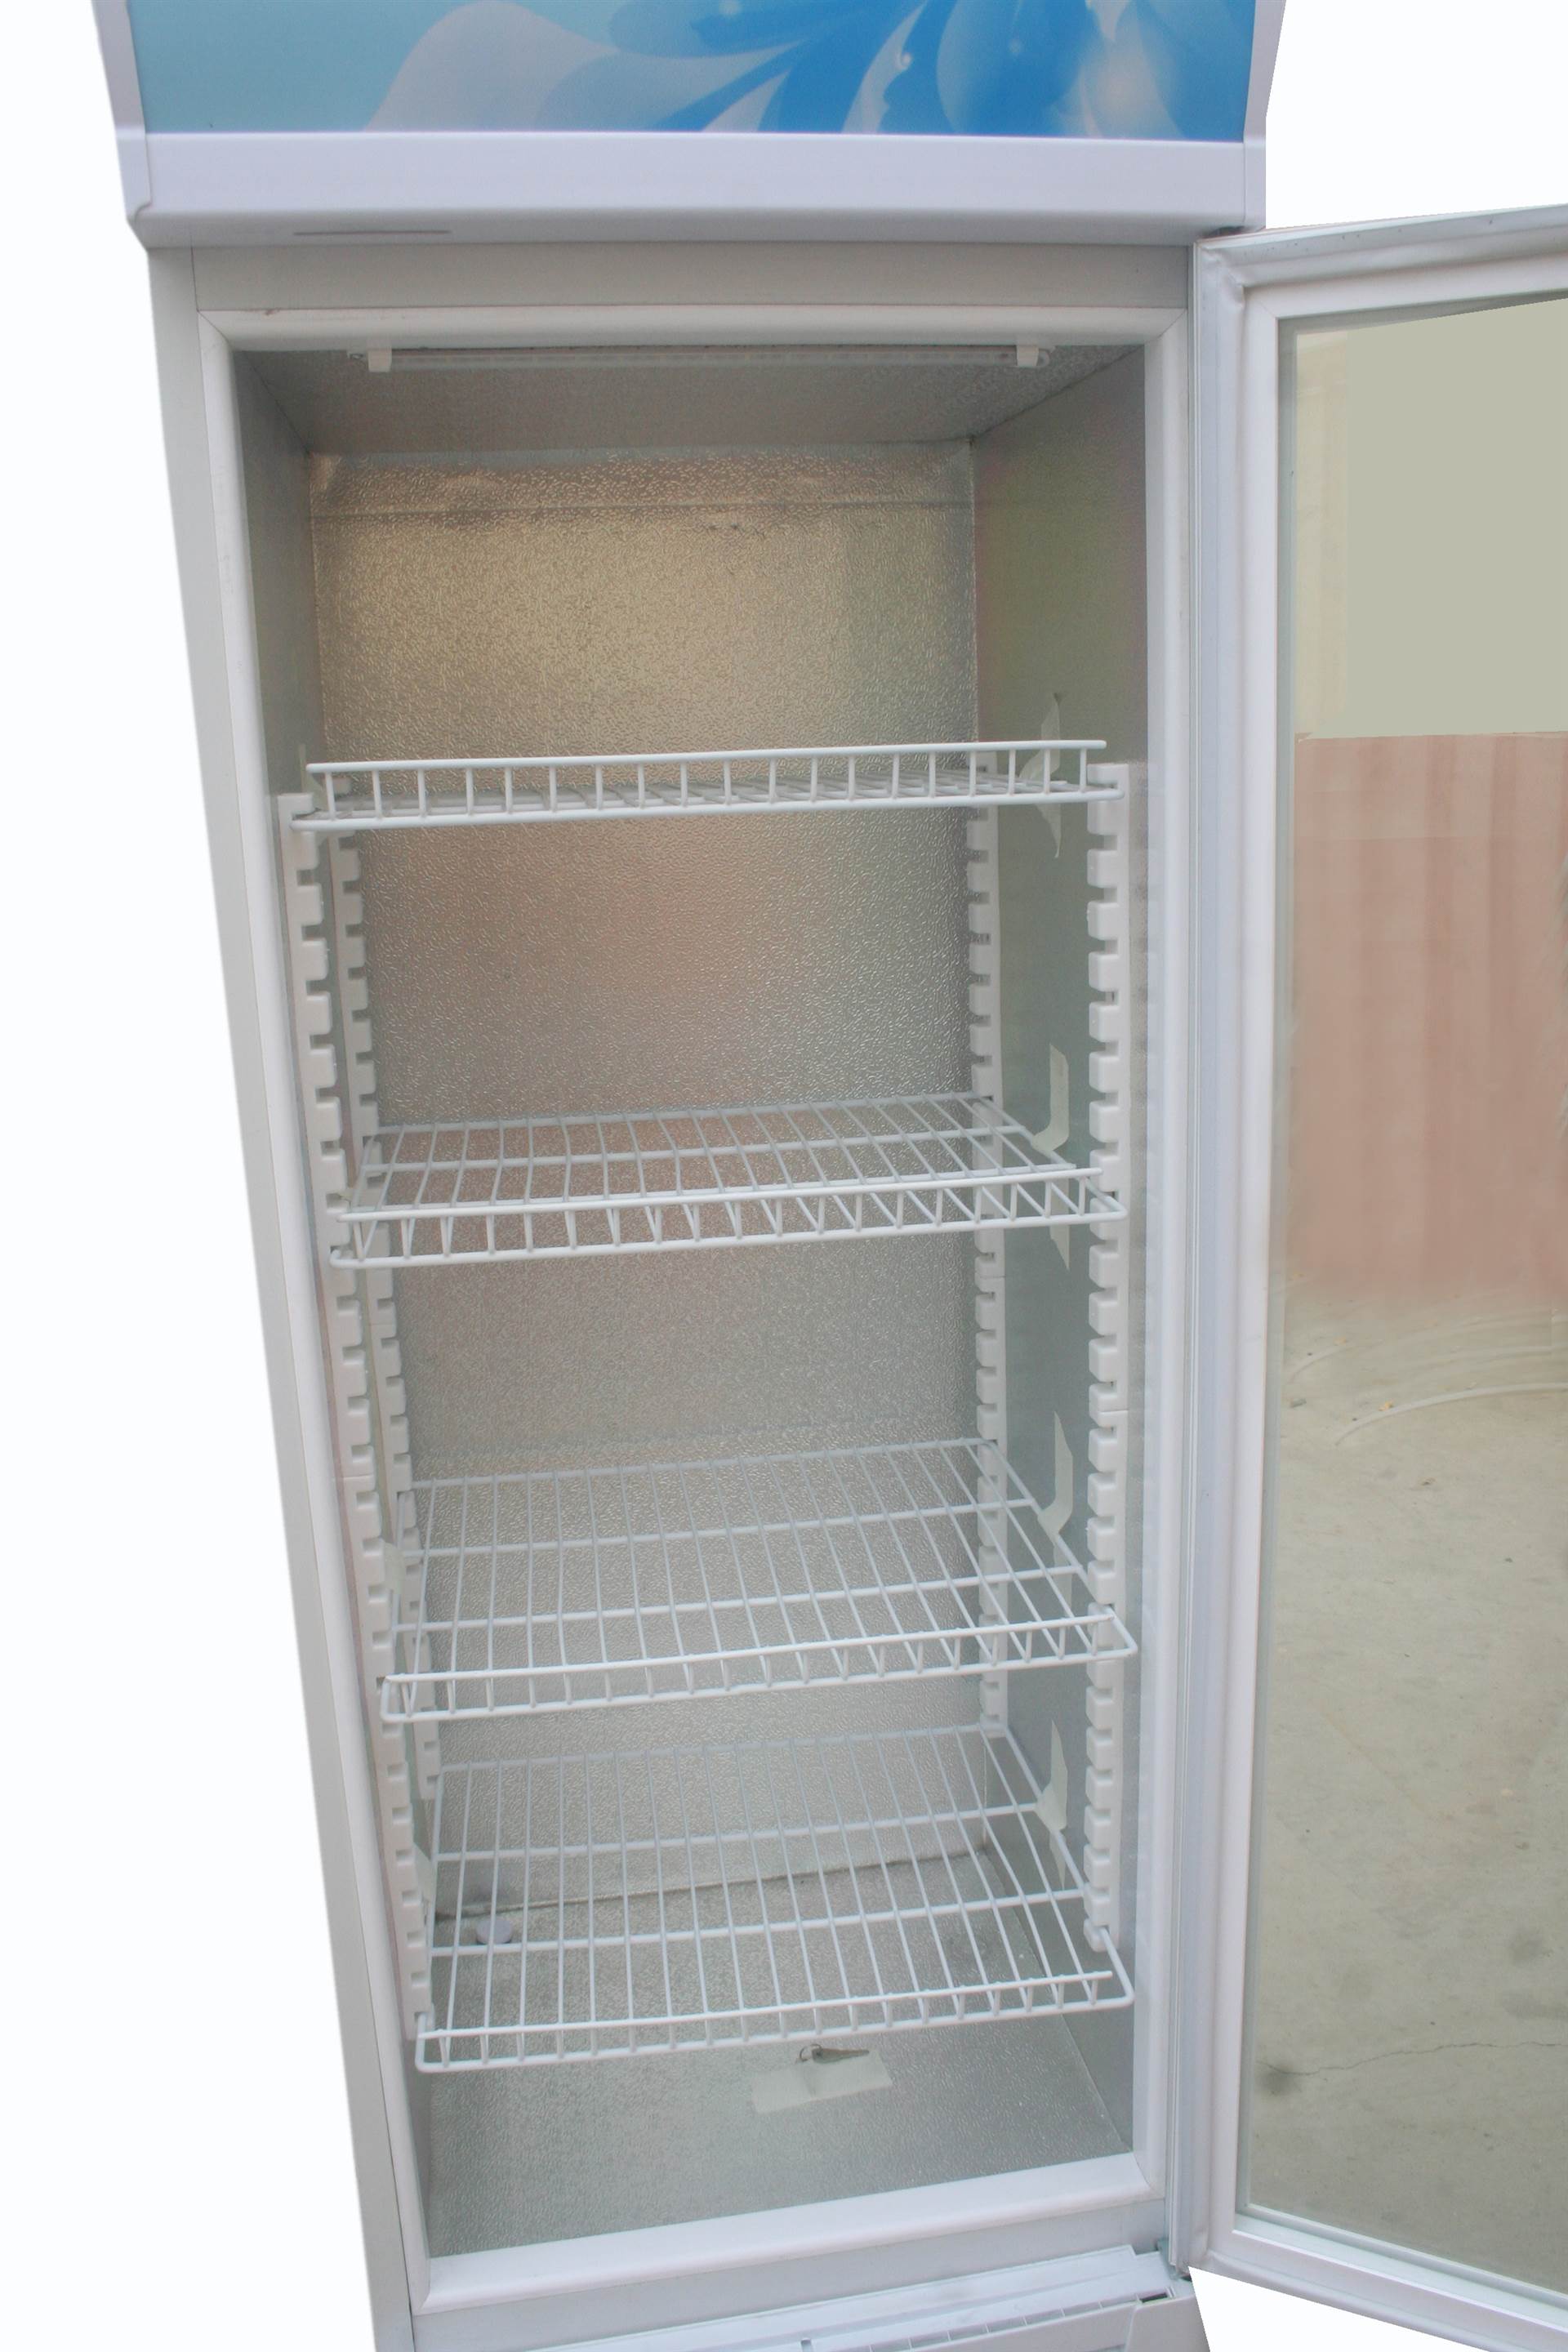 智能控温冷藏柜便利店超市立式三门牛奶冷饮冷藏柜